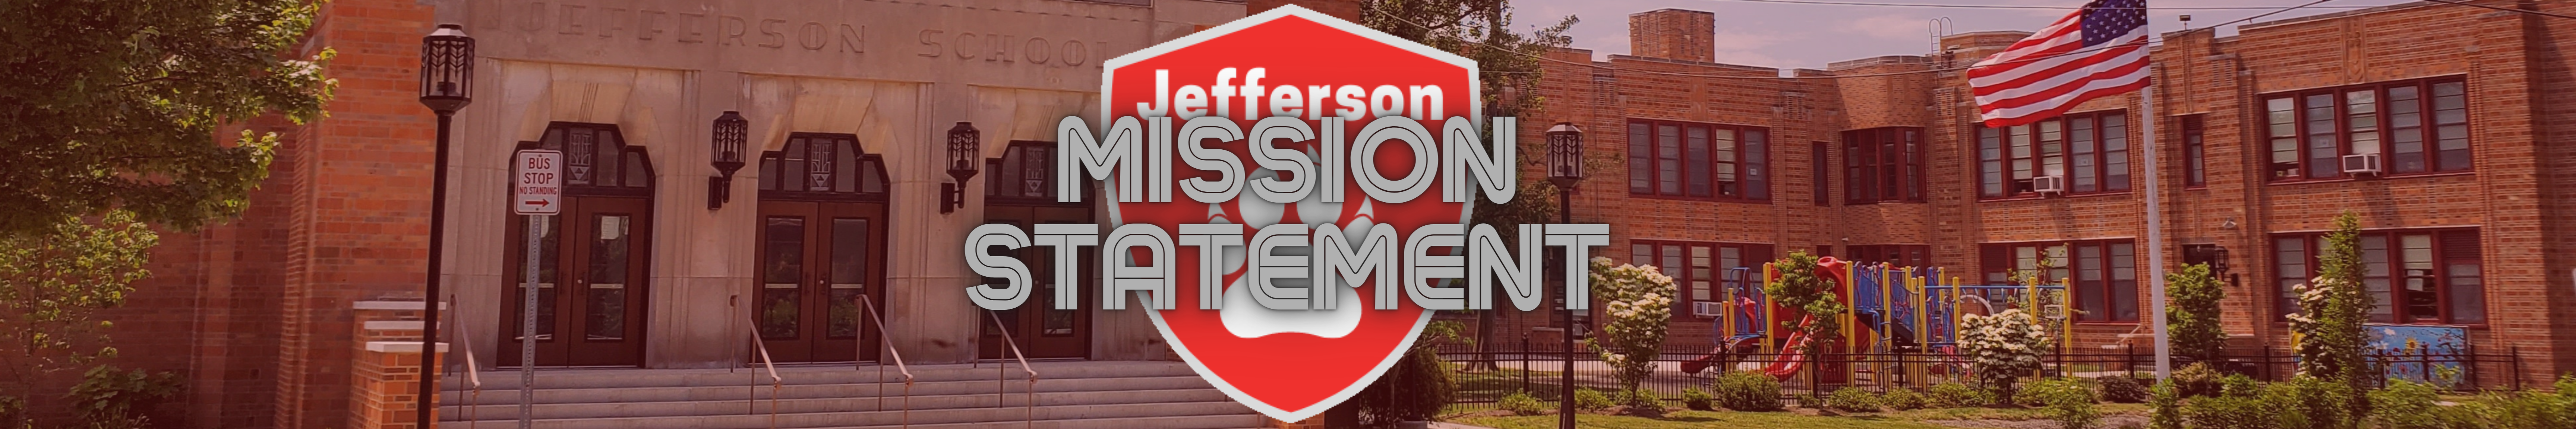 Mission Statement banner